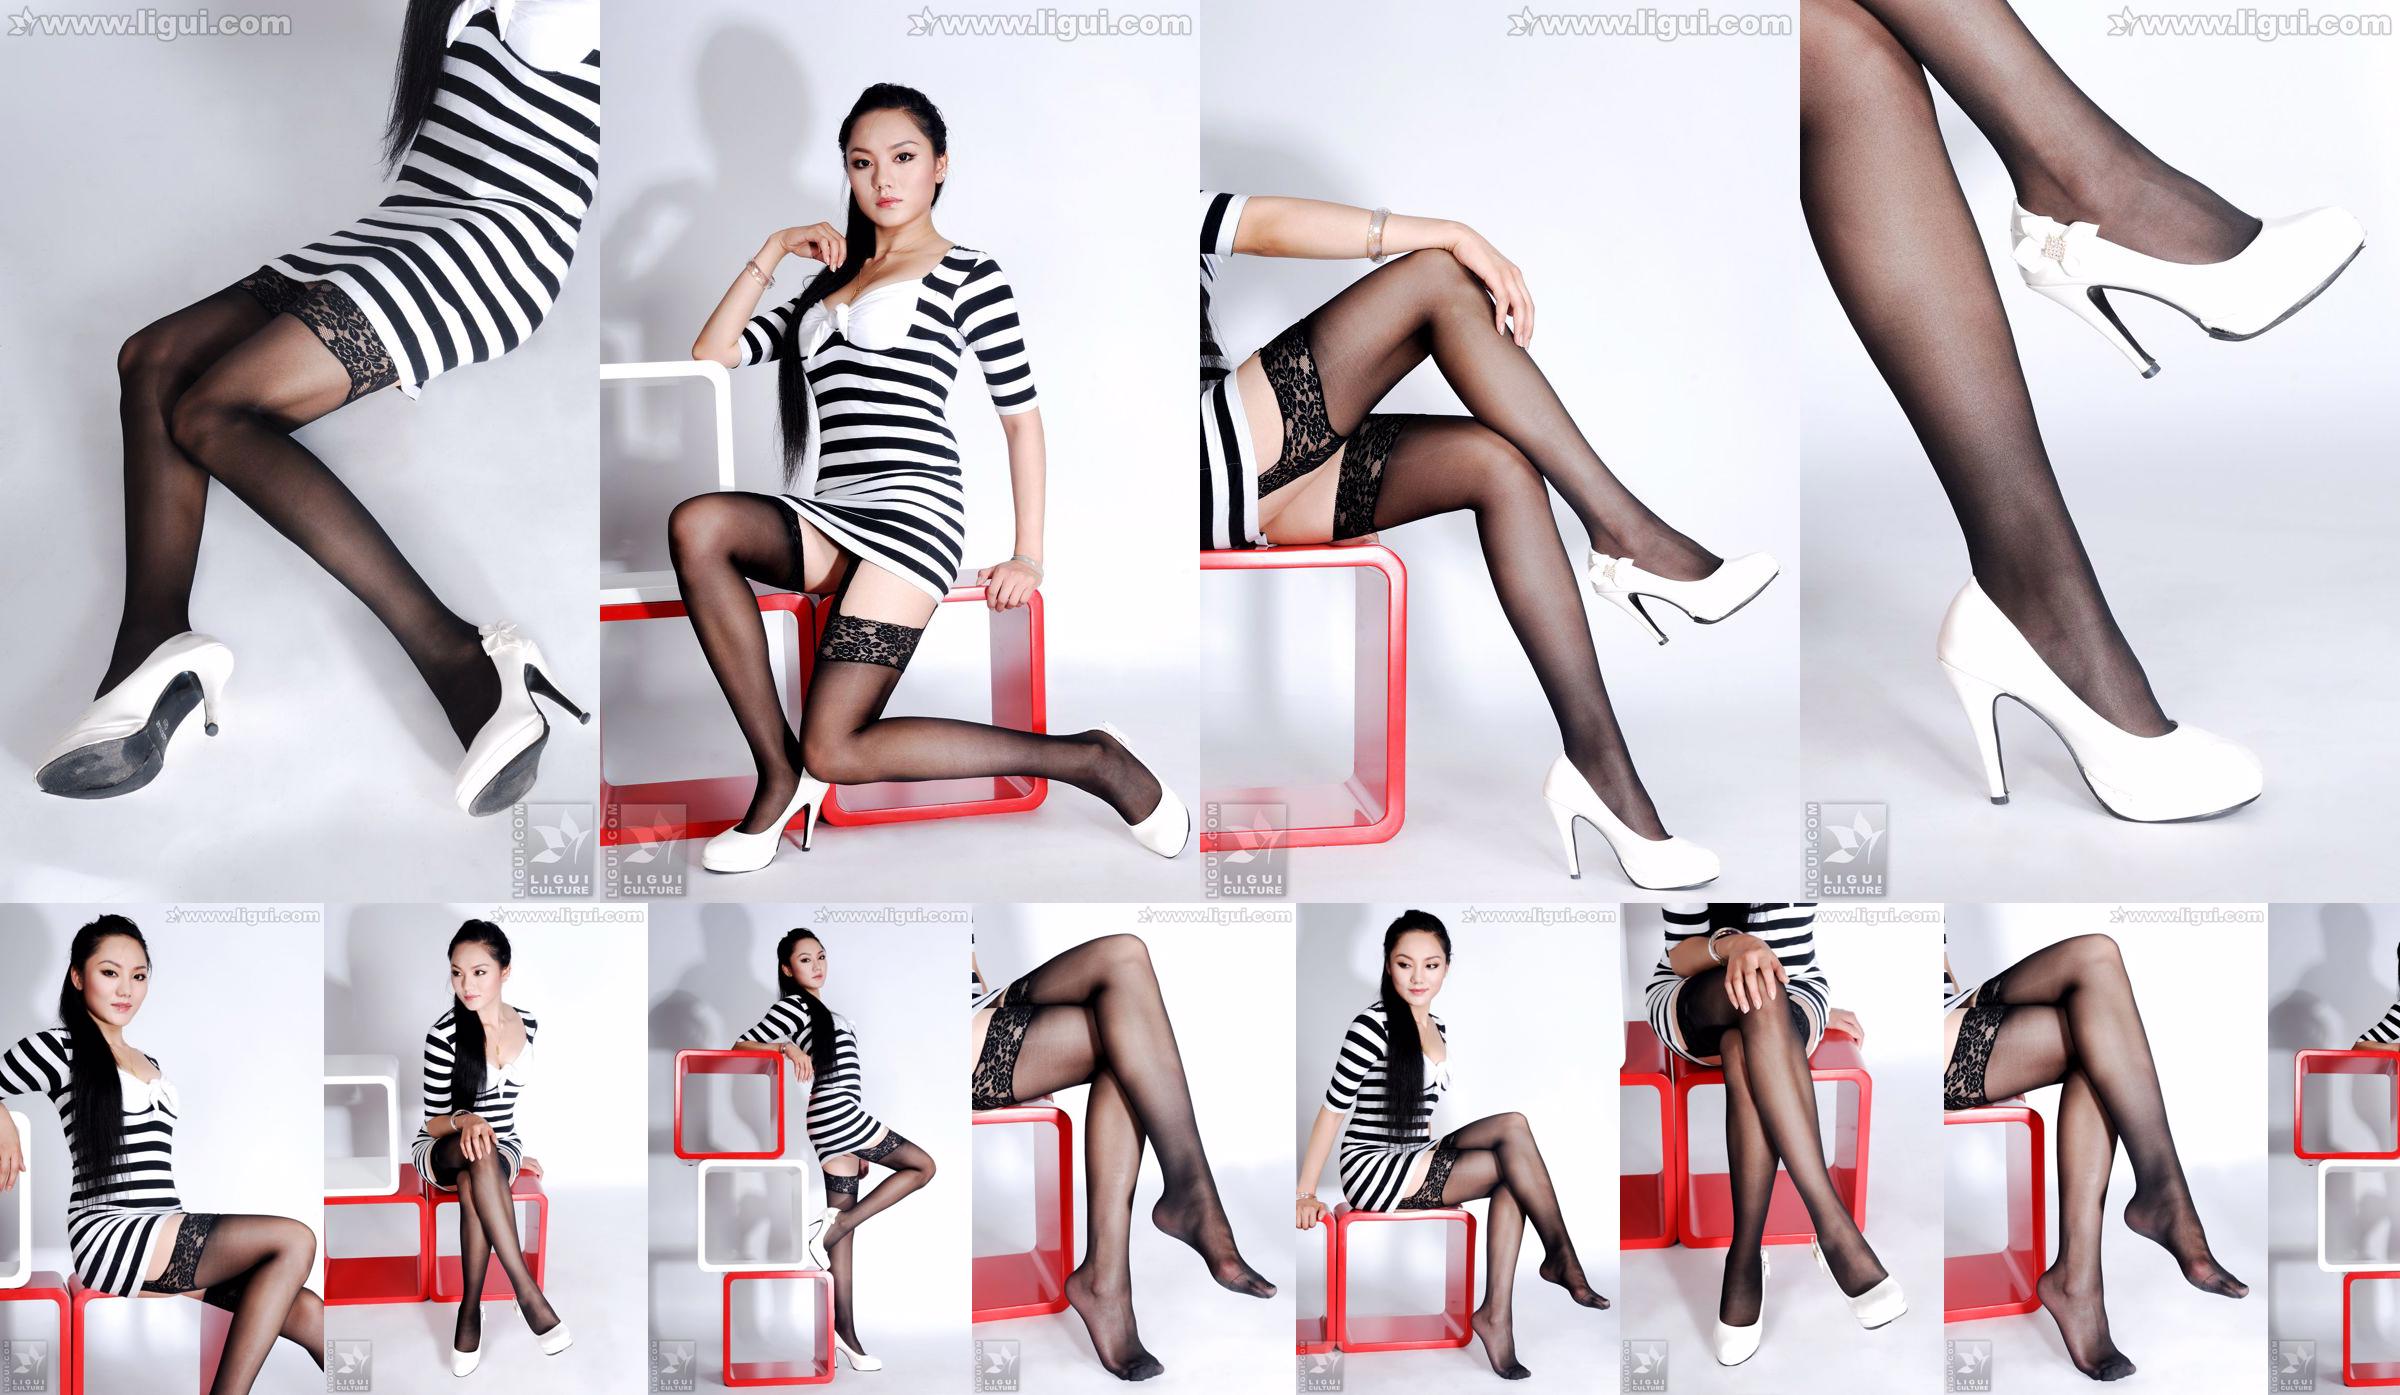 Model Yang Zi "Pesona Stoking dalam Dekorasi Rumah Sederhana" [丽 柜 LiGui] Foto kaki dan kaki giok yang indah No.91a443 Halaman 1